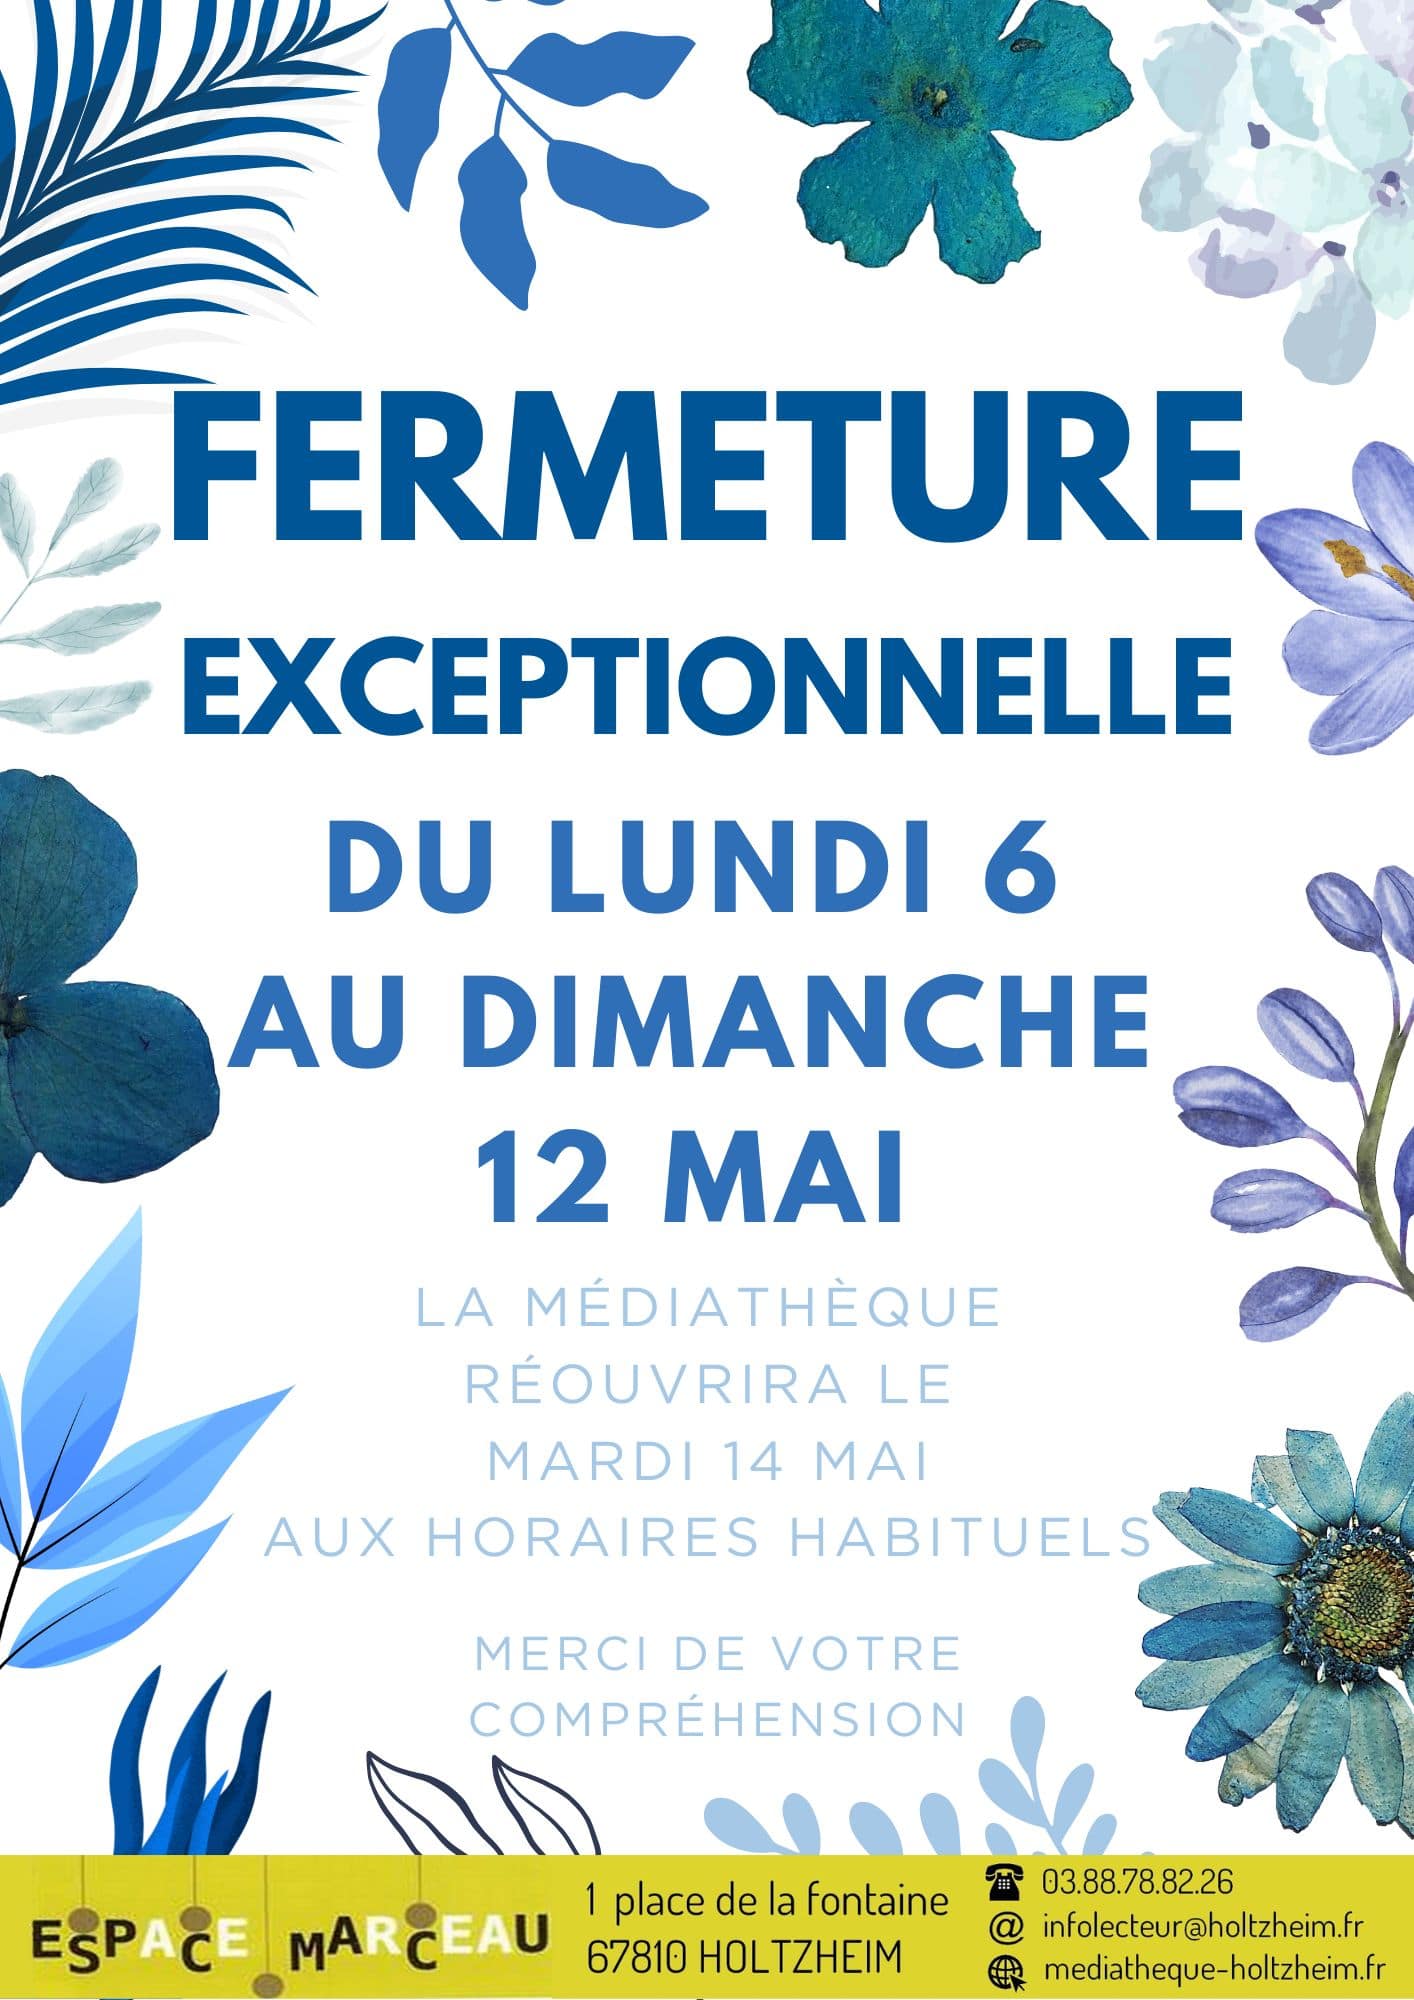 Fermeture de la médiathèque, réouverture le mardi 14 à 14h, avec des illustrations de fleurs bleues